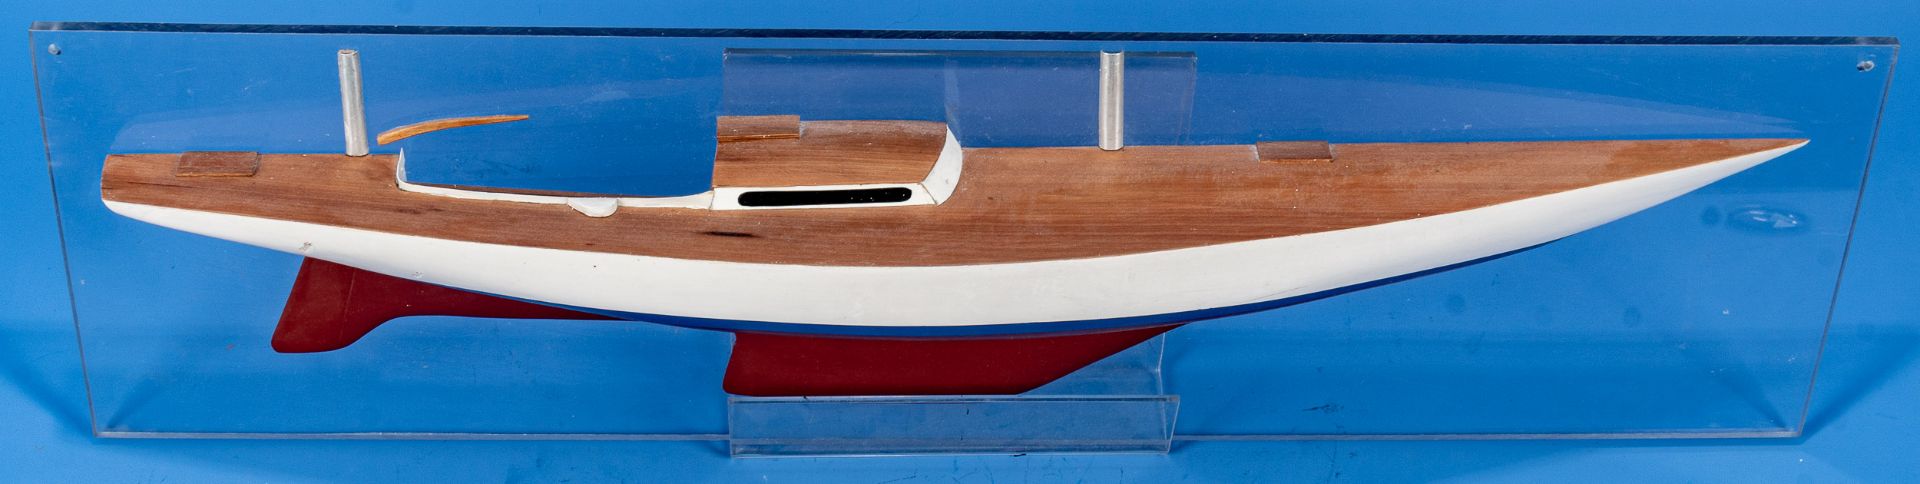 Halbmodell eines Segelschiffrumpfes, auf Fiberglas montiertes, lackiertes und furniertes Holzmodell - Image 2 of 4